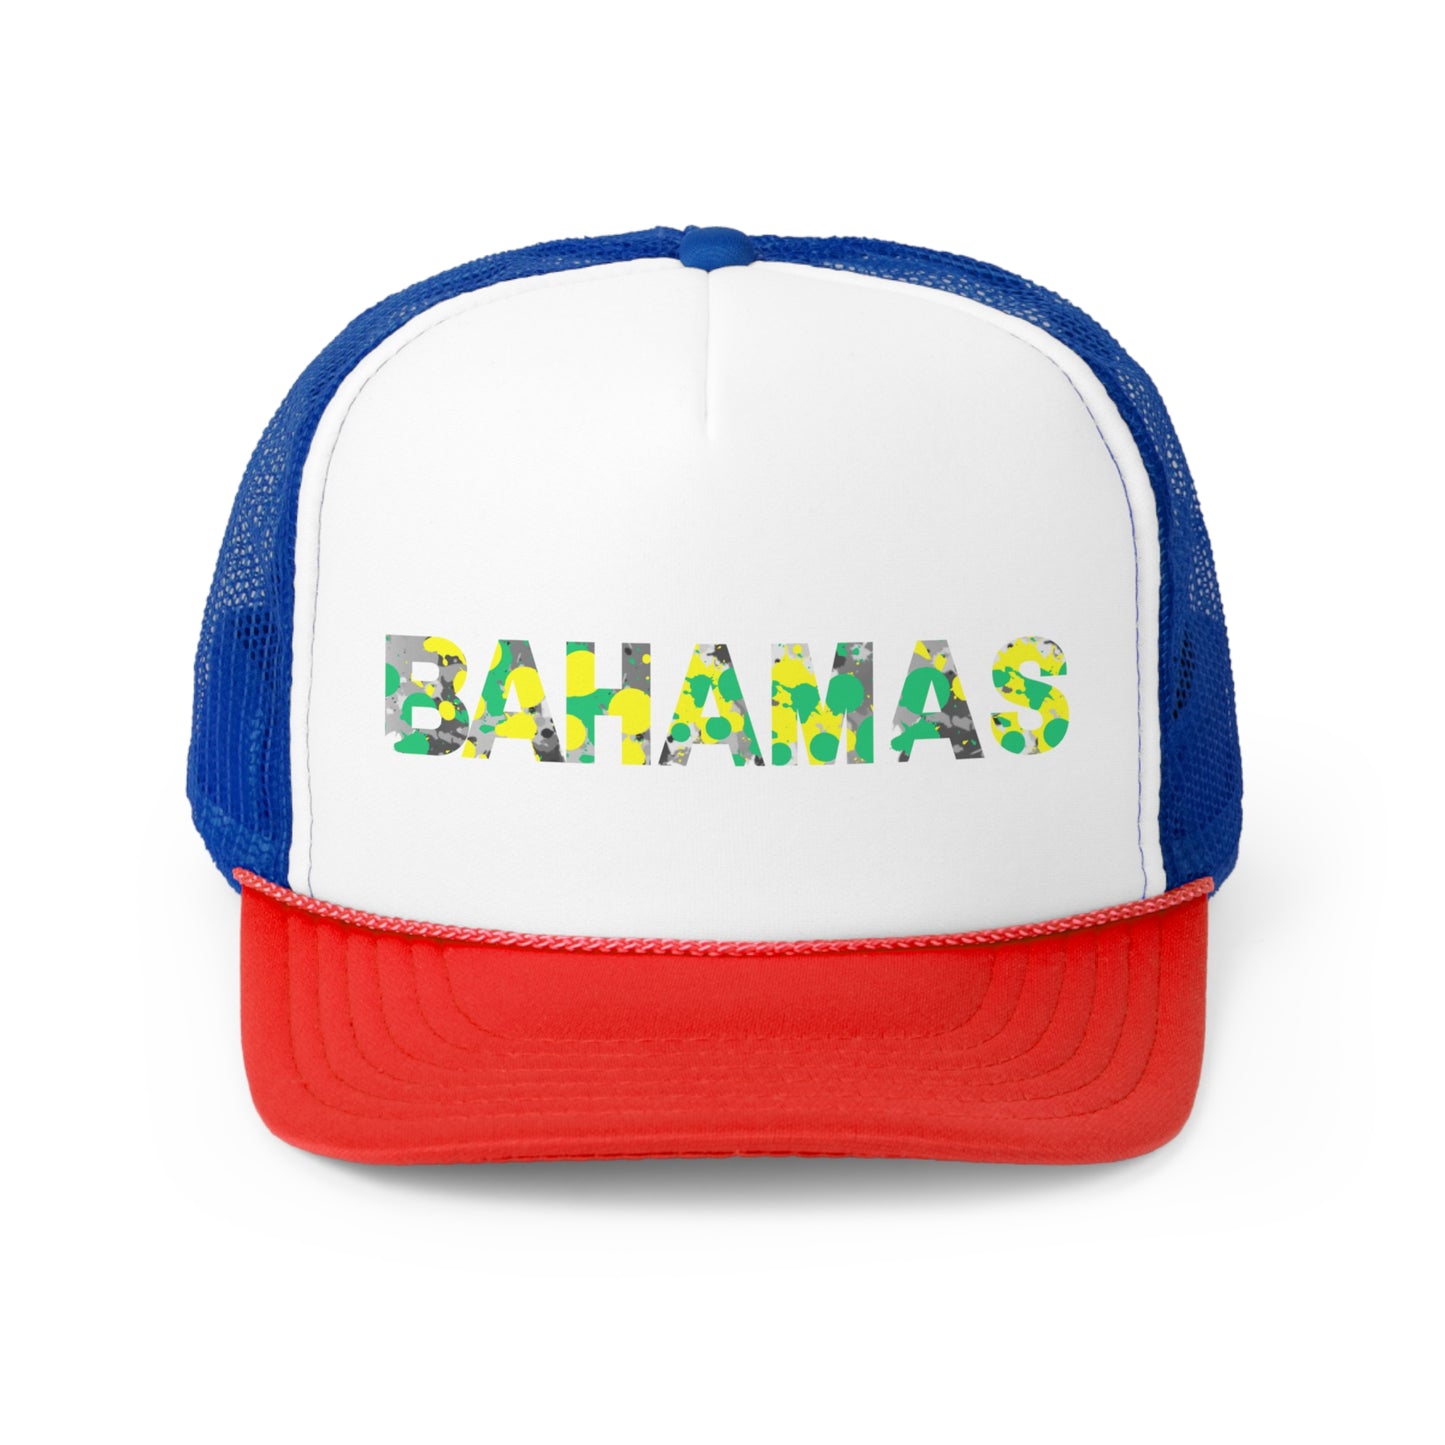 Bahamas Trucker Caps